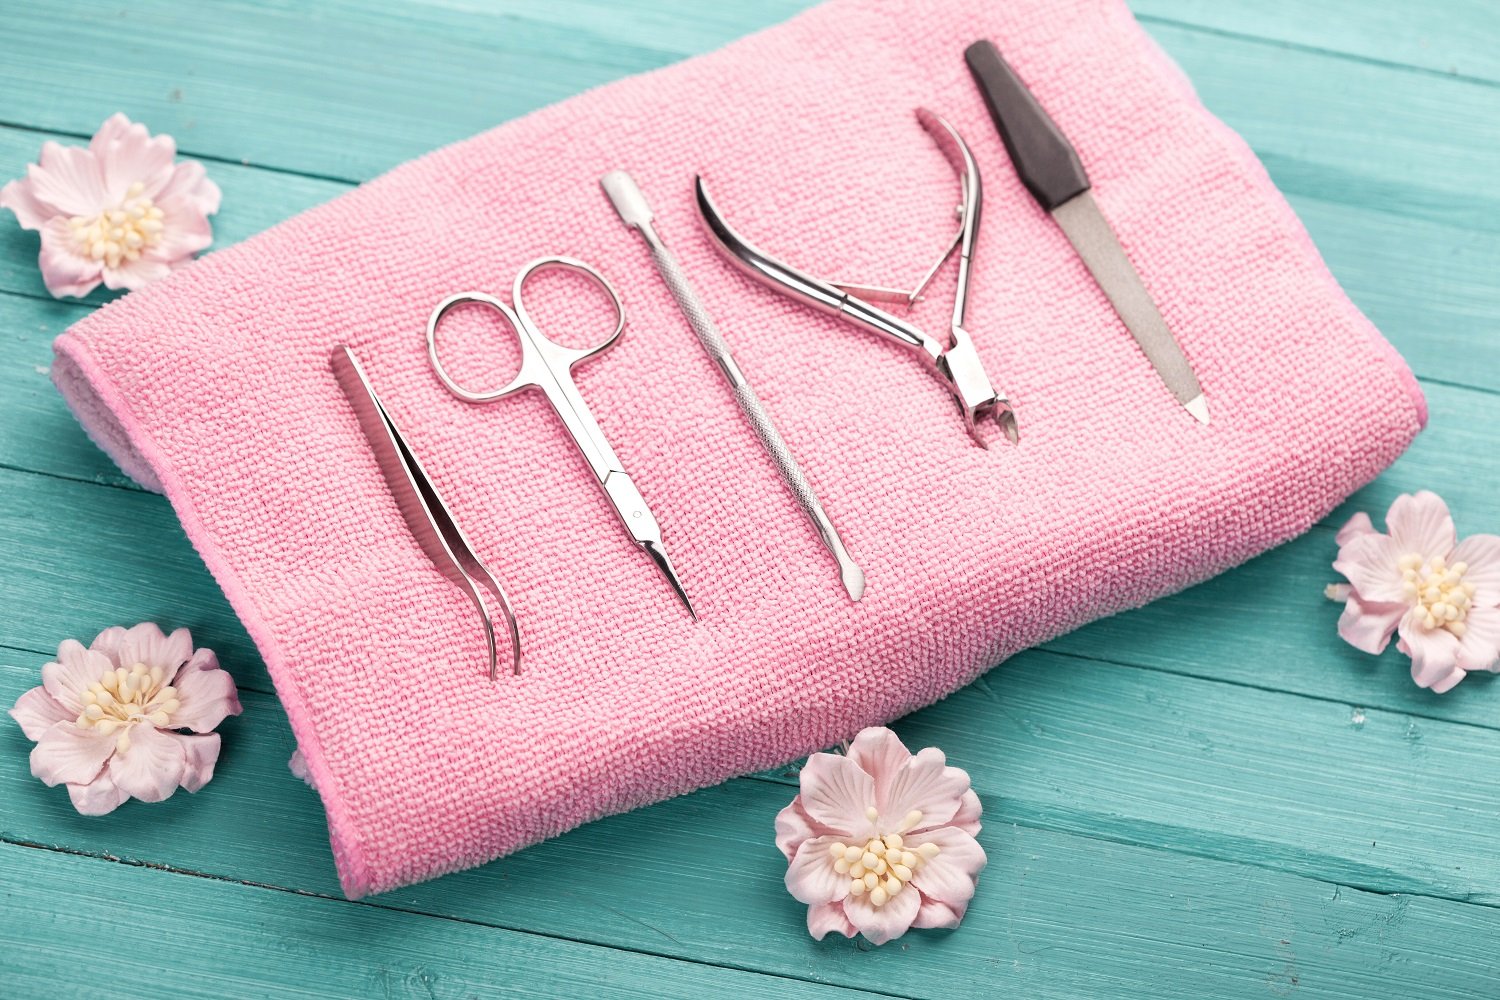 Set de herramientas para manicura sobre una toalla de color rosa. | Foto: Shutterstock